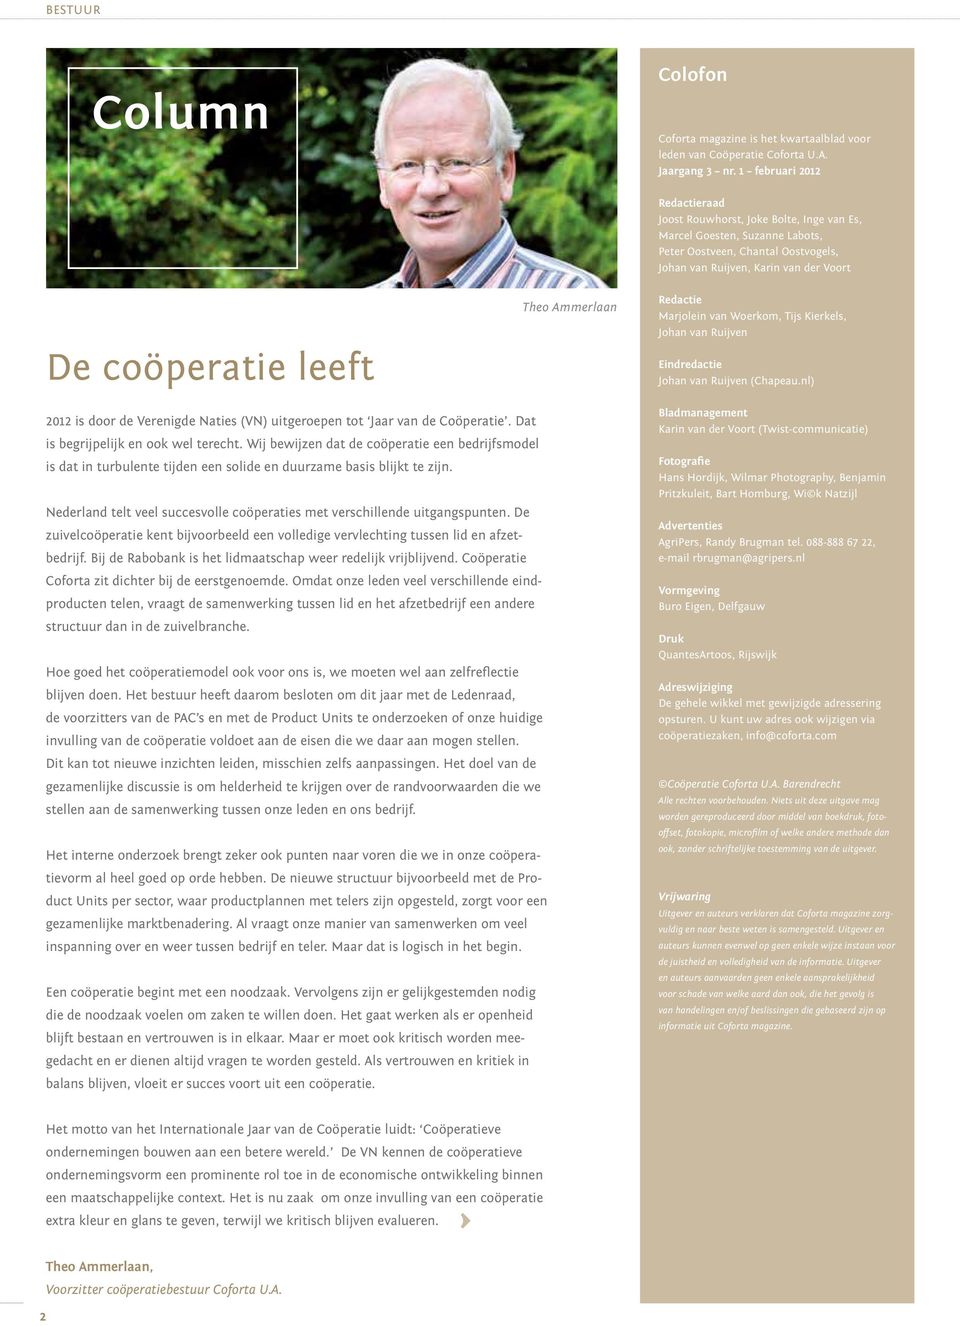 Theo Ammerlaan Redactie Marjolein van Woerkom, Tijs Kierkels, Johan van Ruijven Eindredactie Johan van Ruijven (Chapeau.